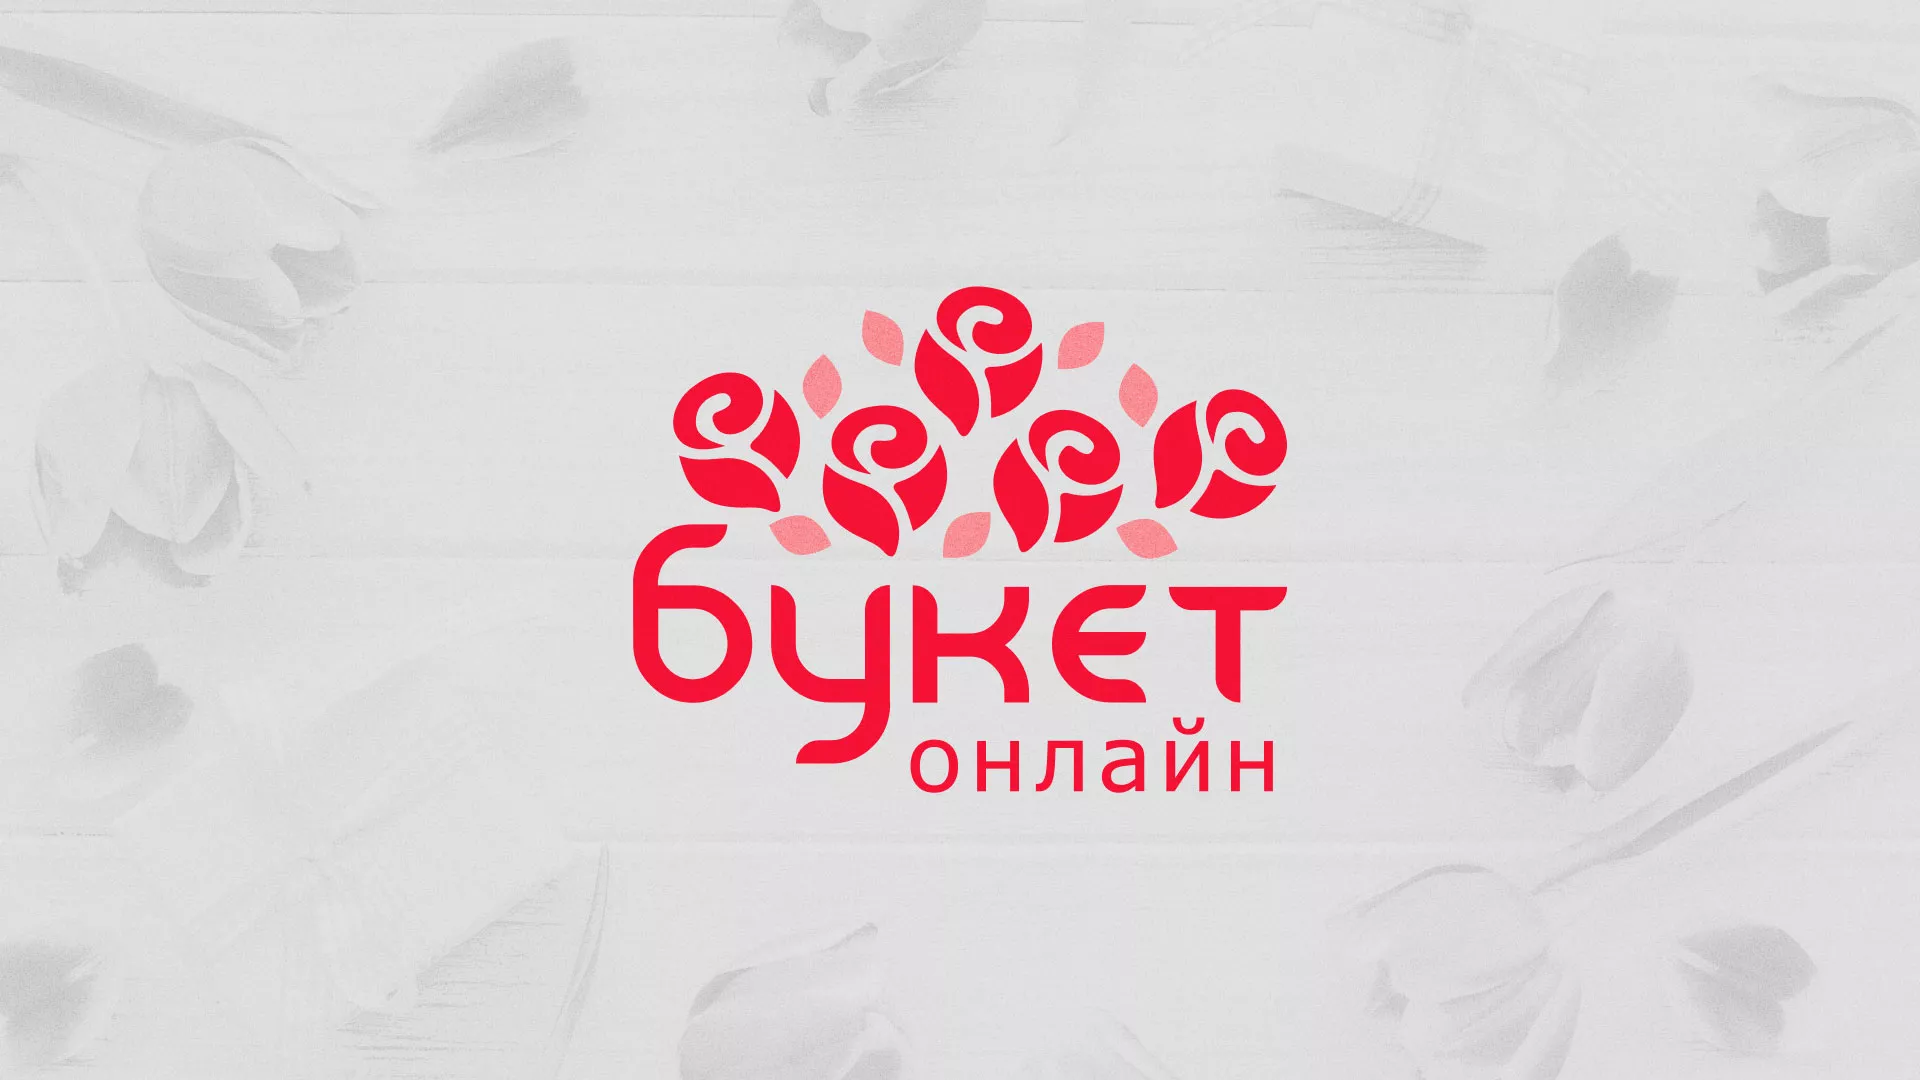 Создание интернет-магазина «Букет-онлайн» по цветам в Сальске